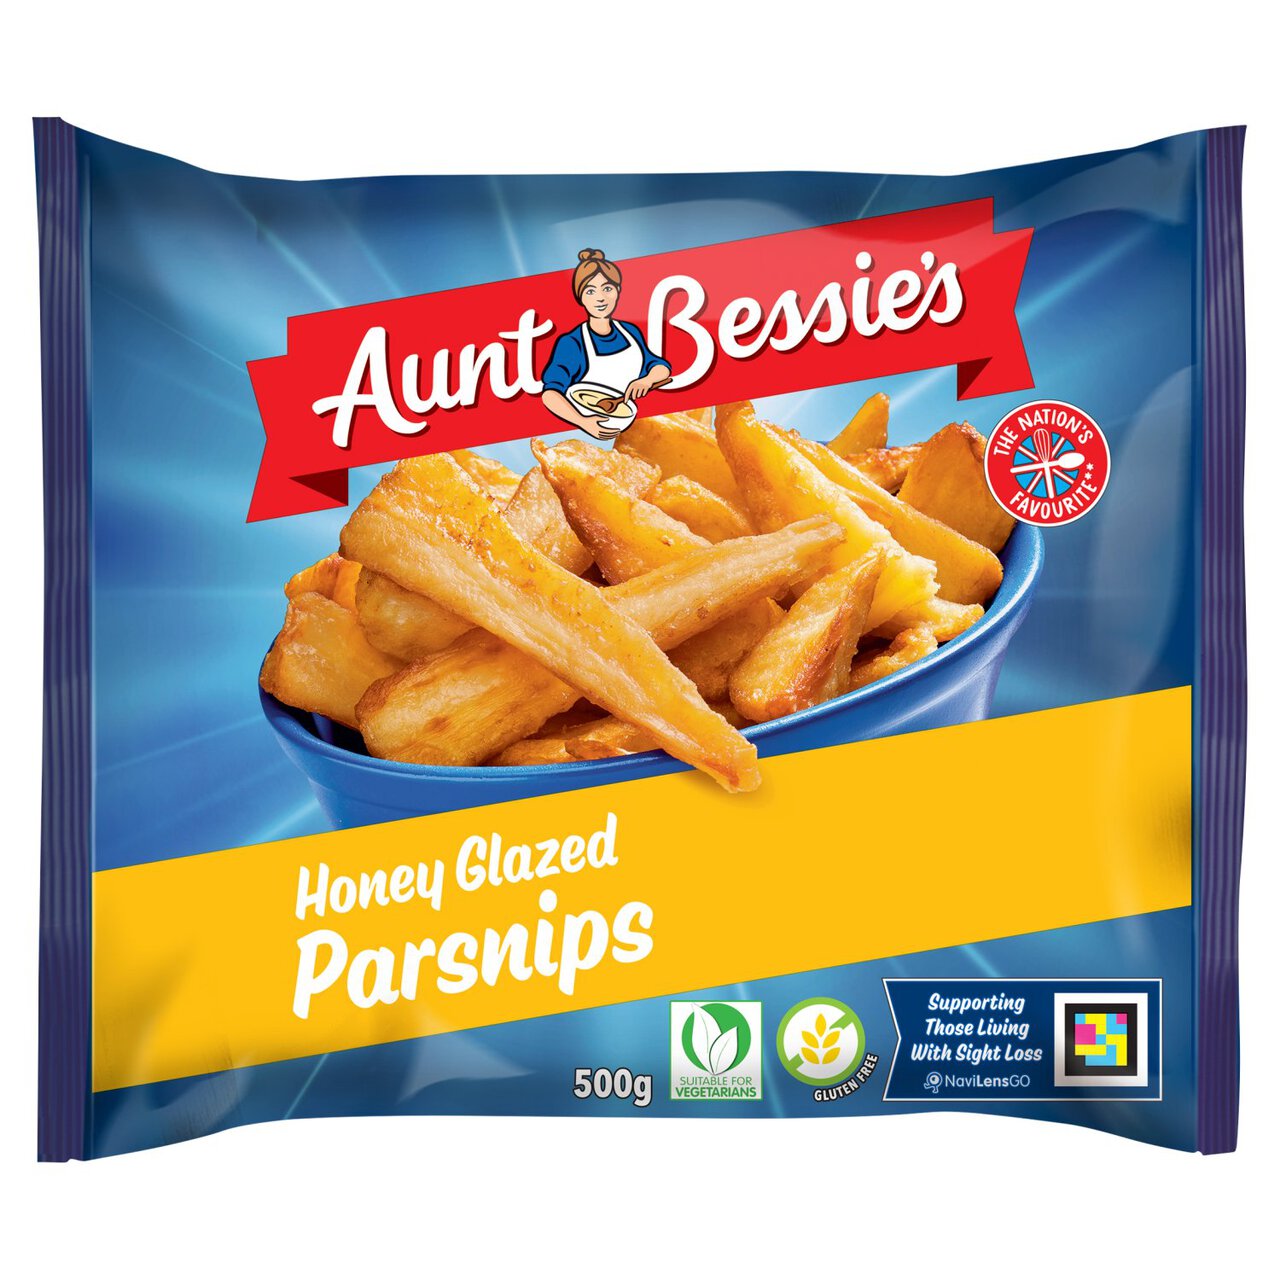 Aunt Bessie's Honey Glazed Parsnips 500g